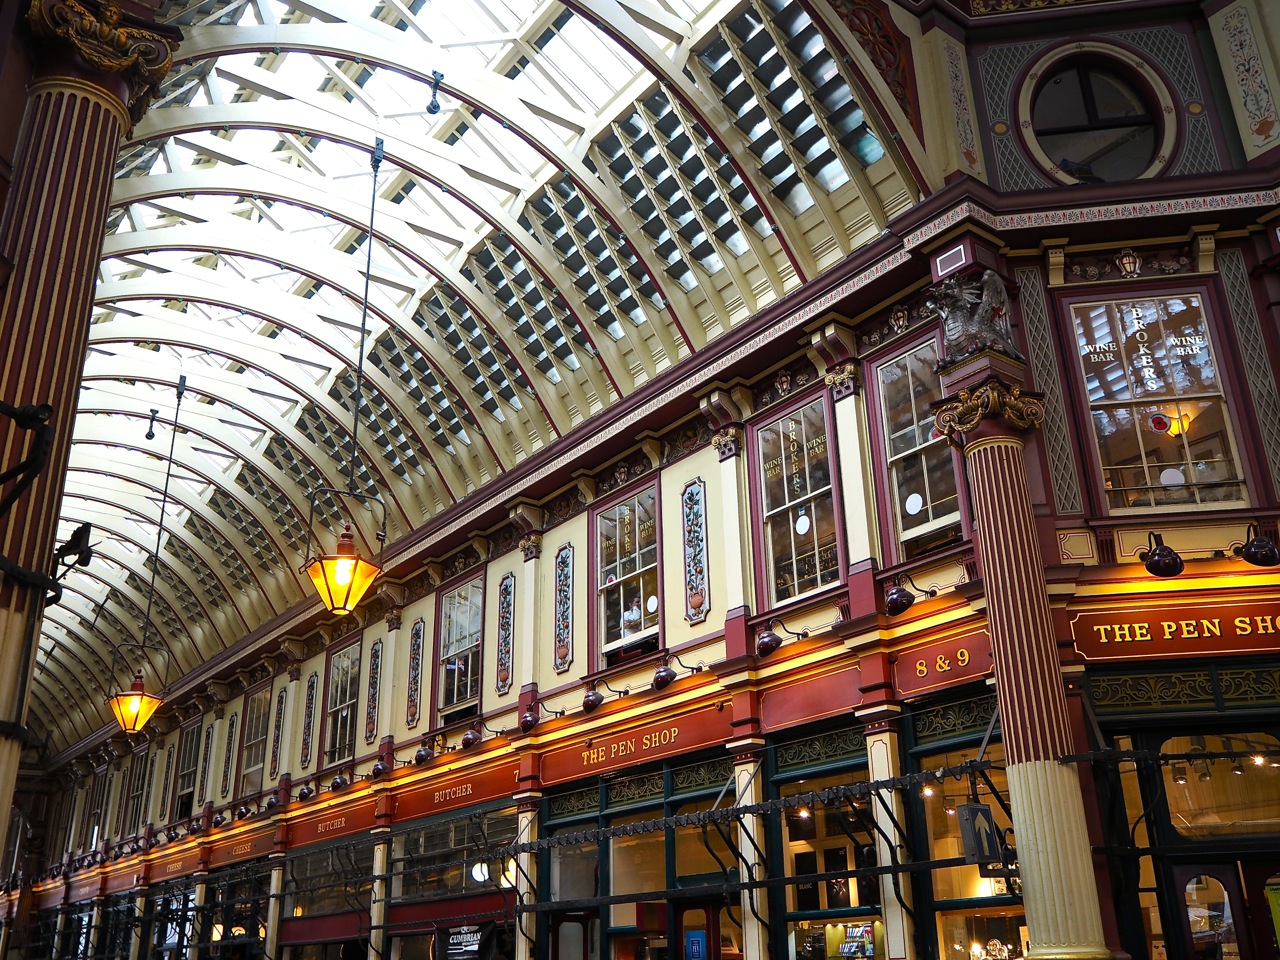 Harry Potter locations. Harry Potter in London location. Harry Potter Museum in London. Made in b London. Списки в лондоне